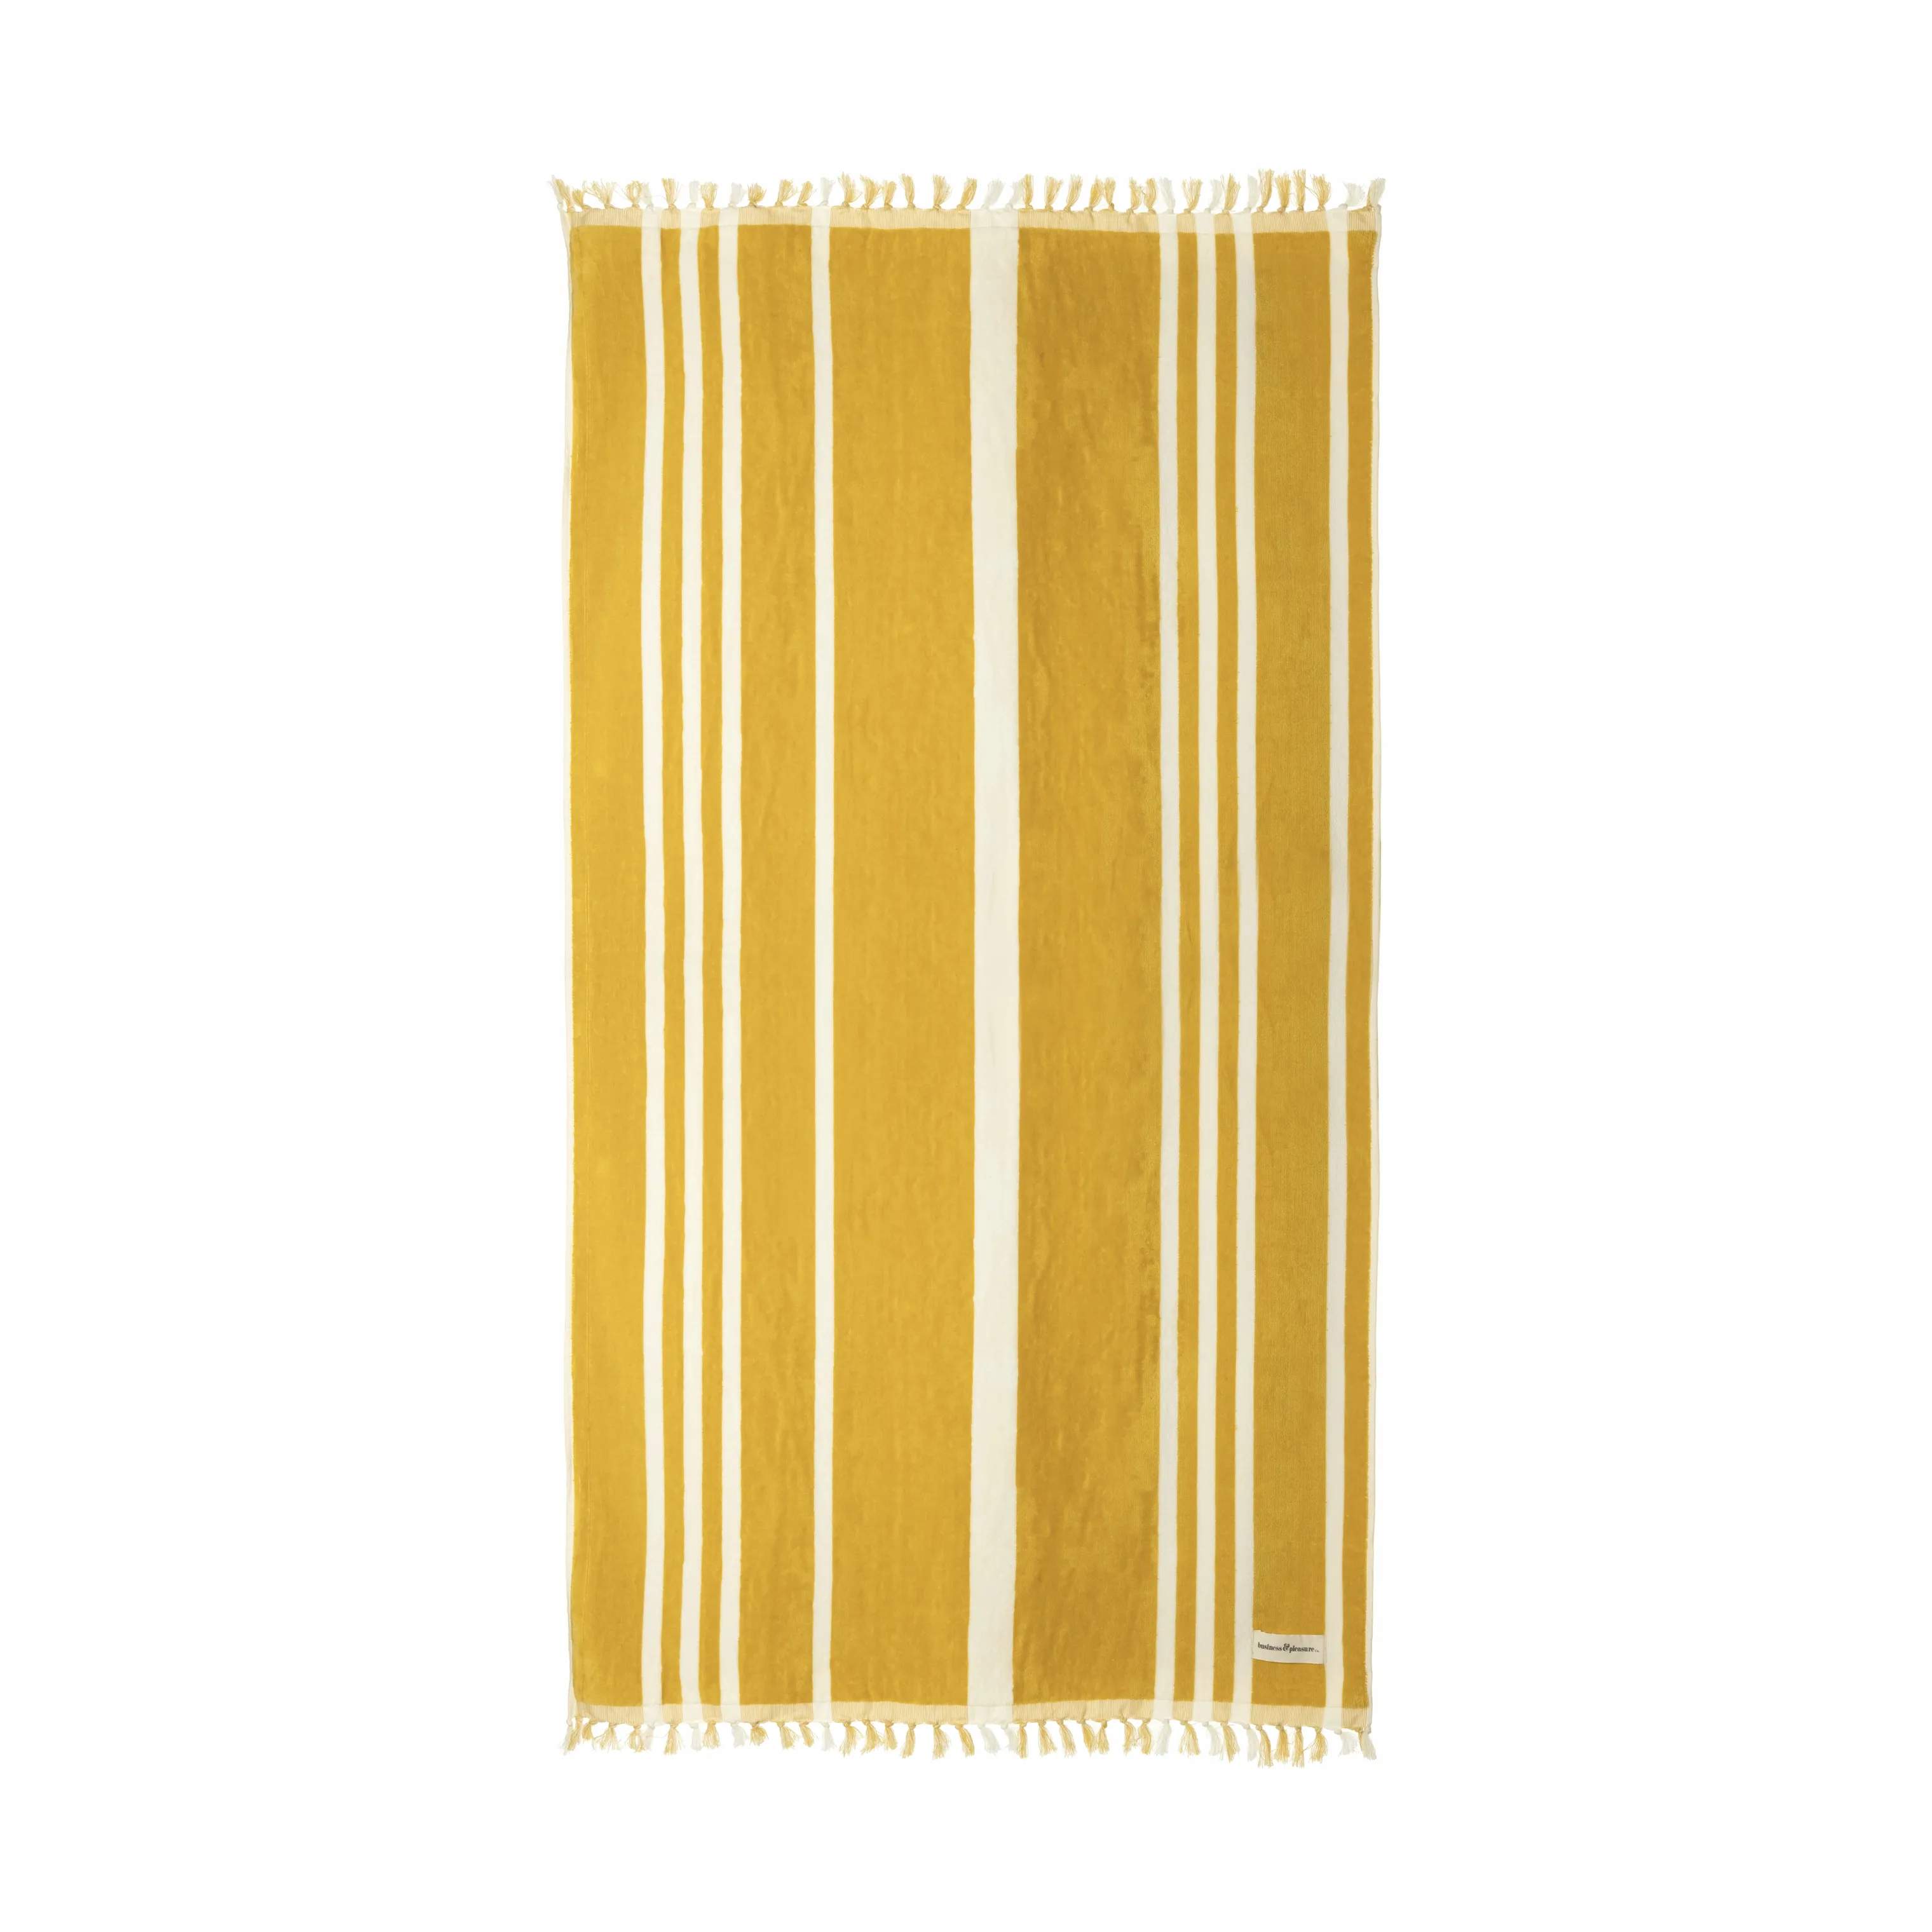 Strandhåndklæde, vintage yellow stripe, large